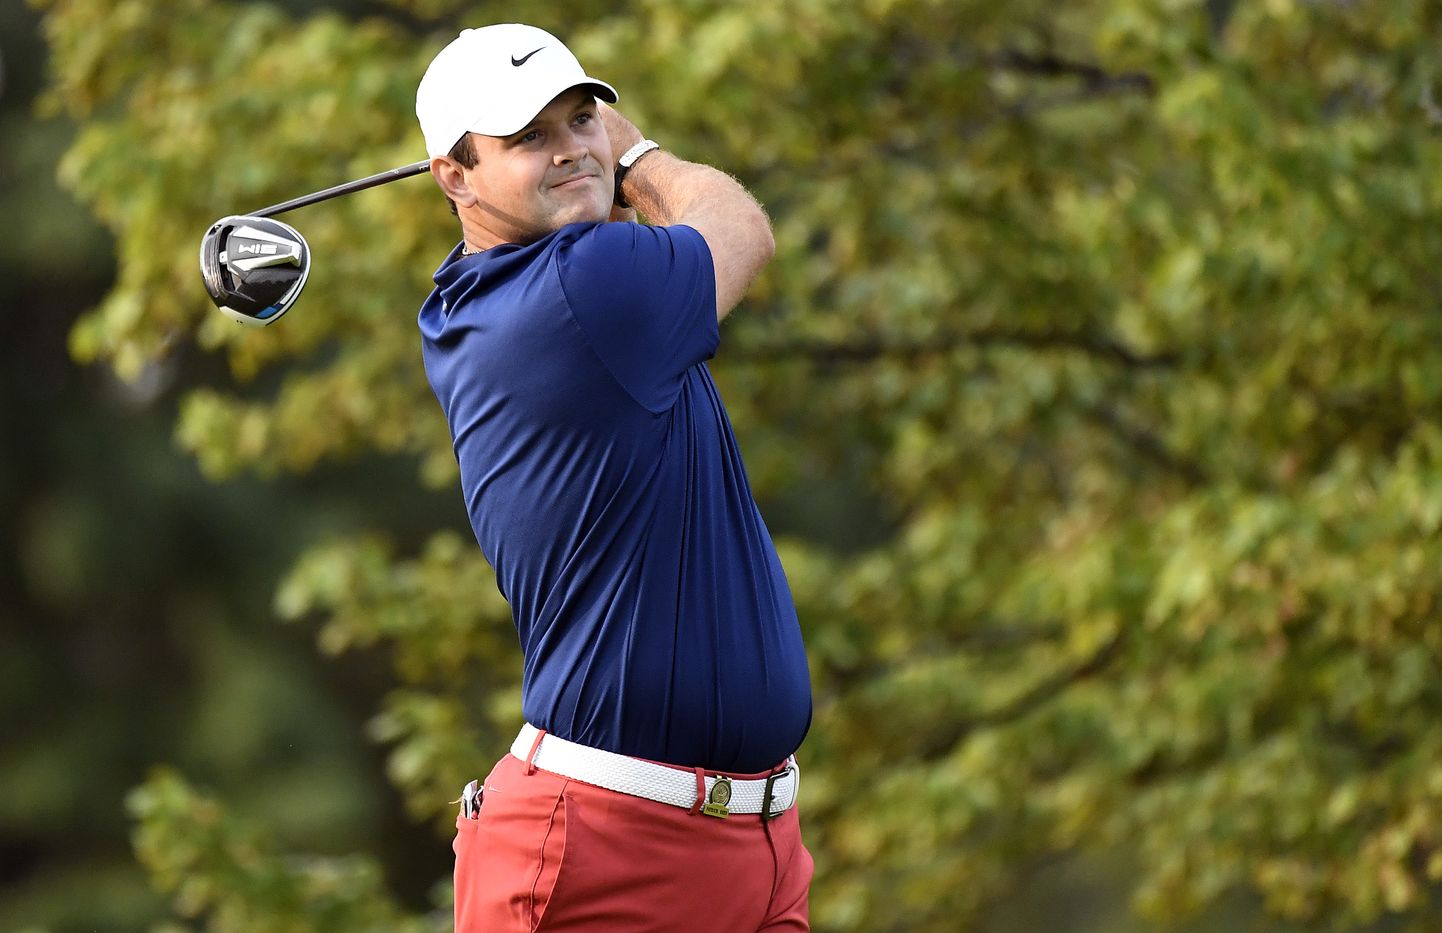 30-aastane USA professionaalne golfimängija Patrick Reed.